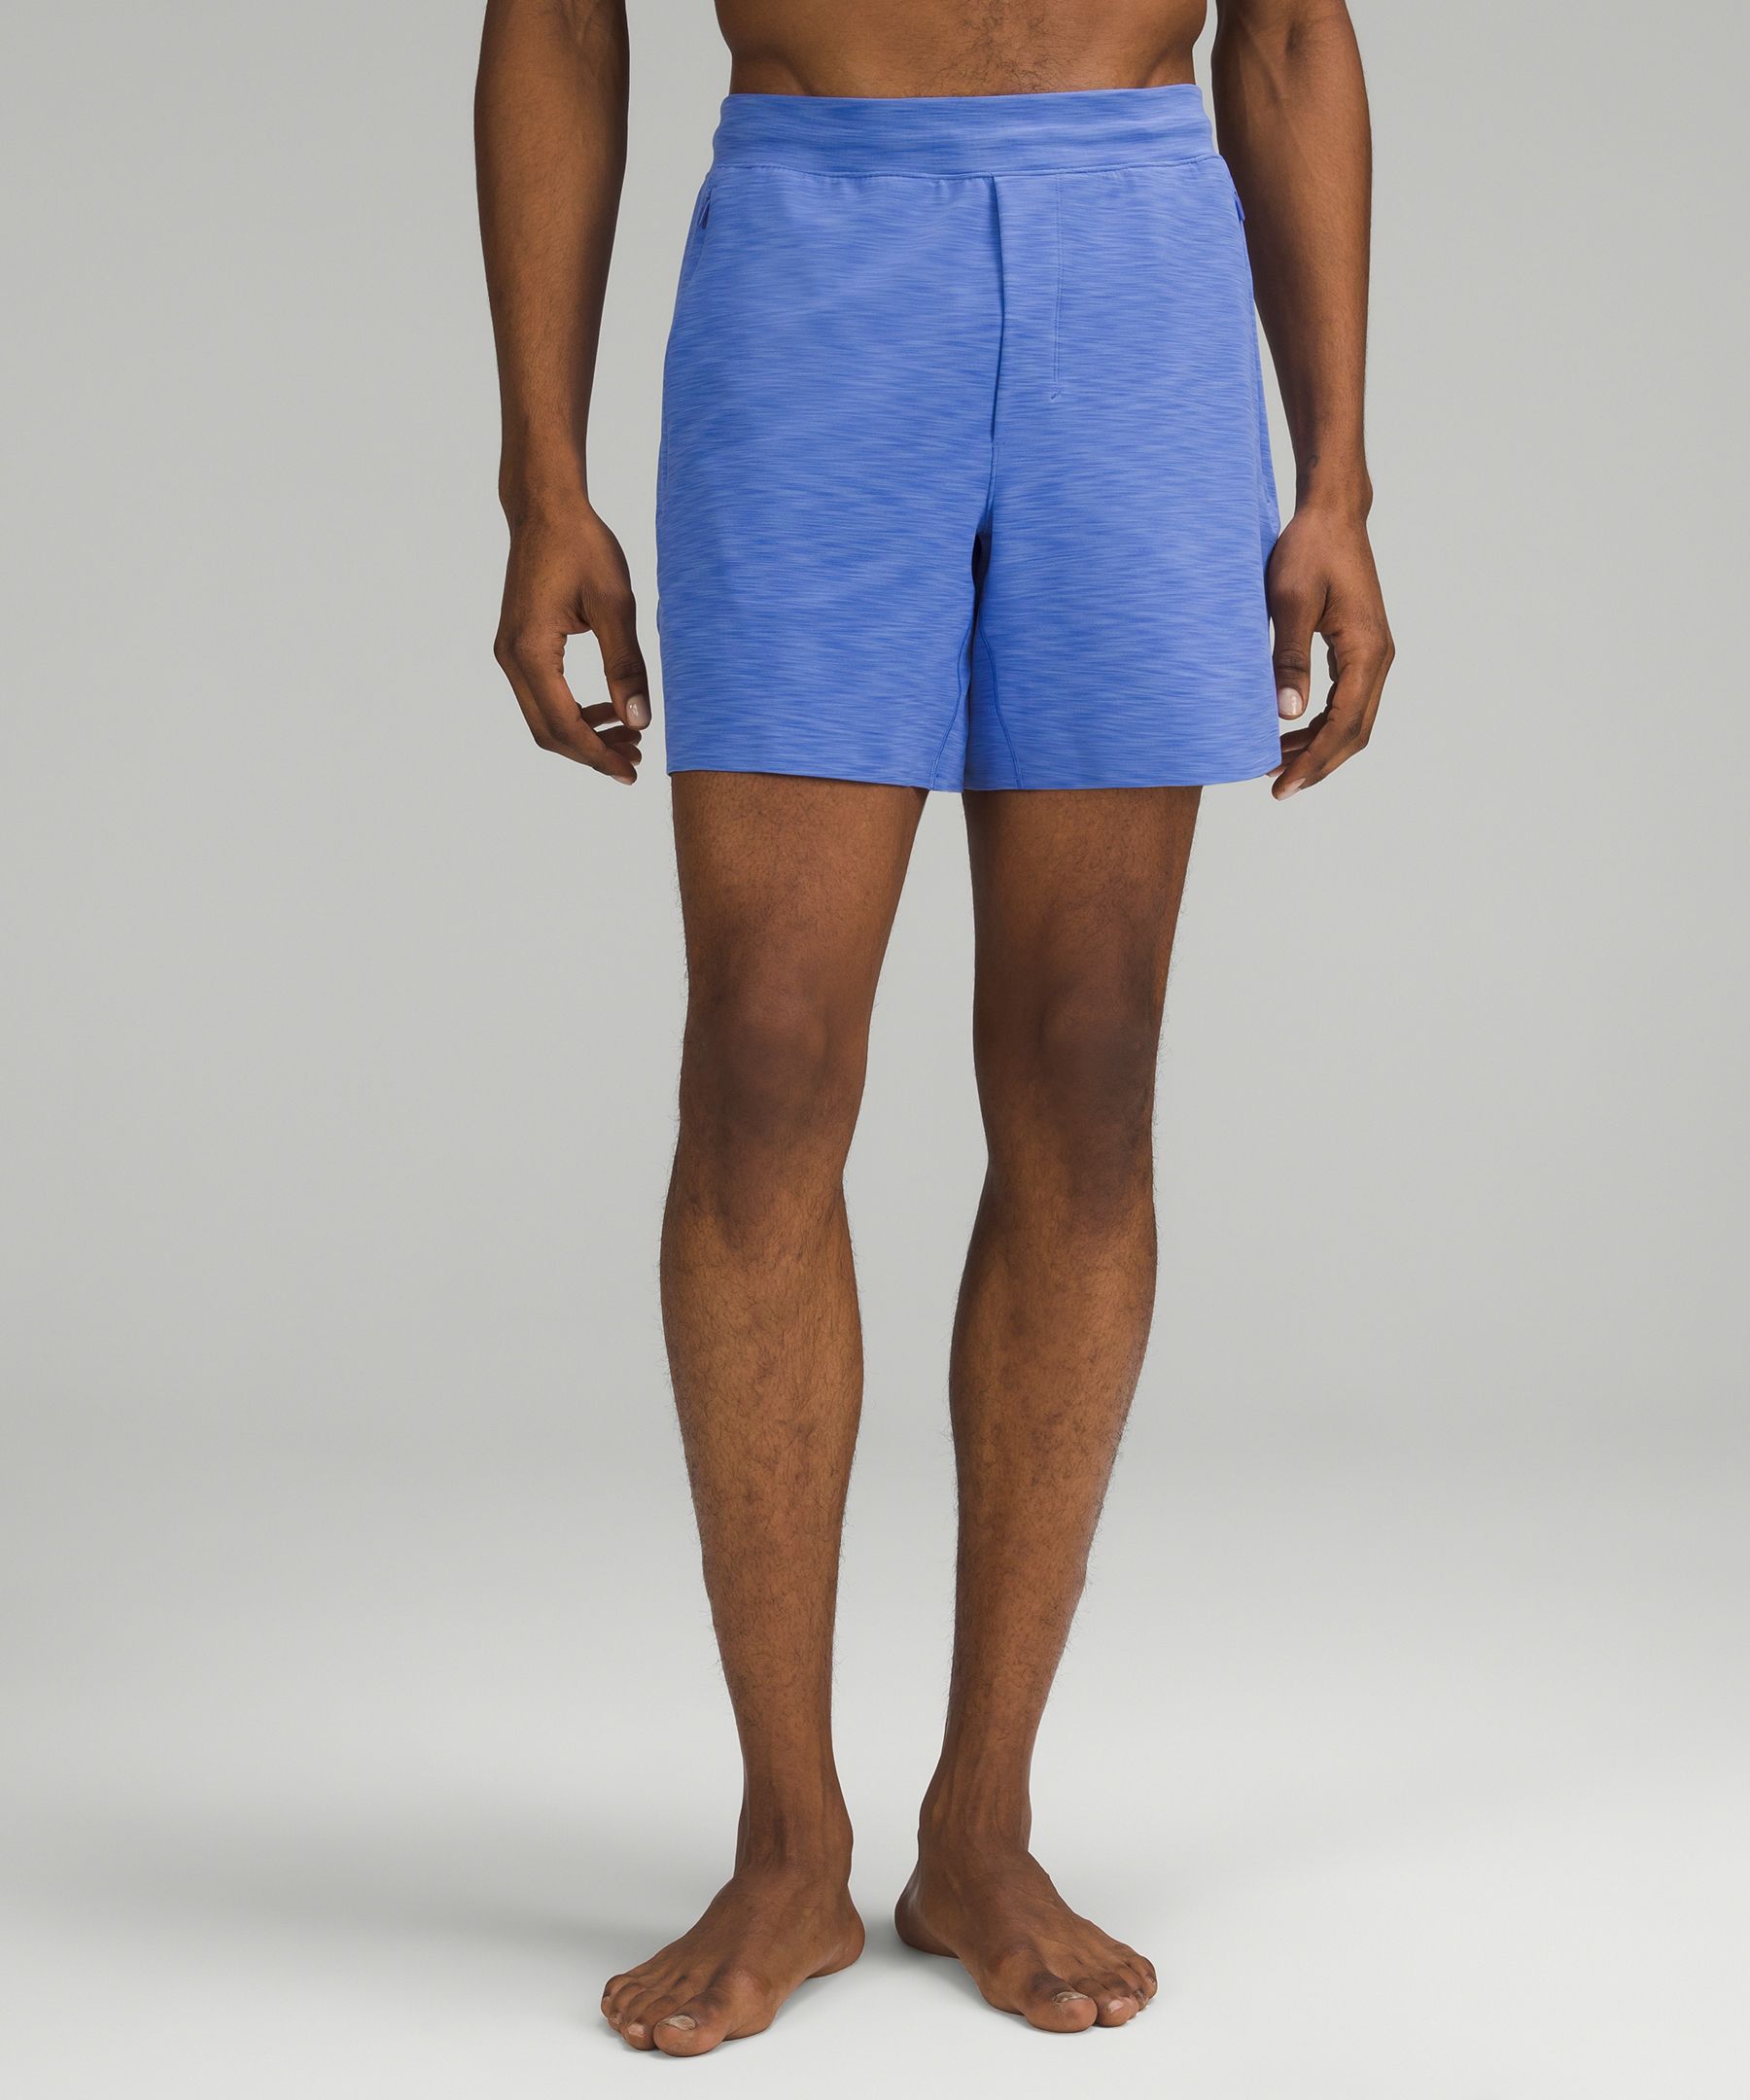 Lululemon Balancer Shorts 6" In Blue